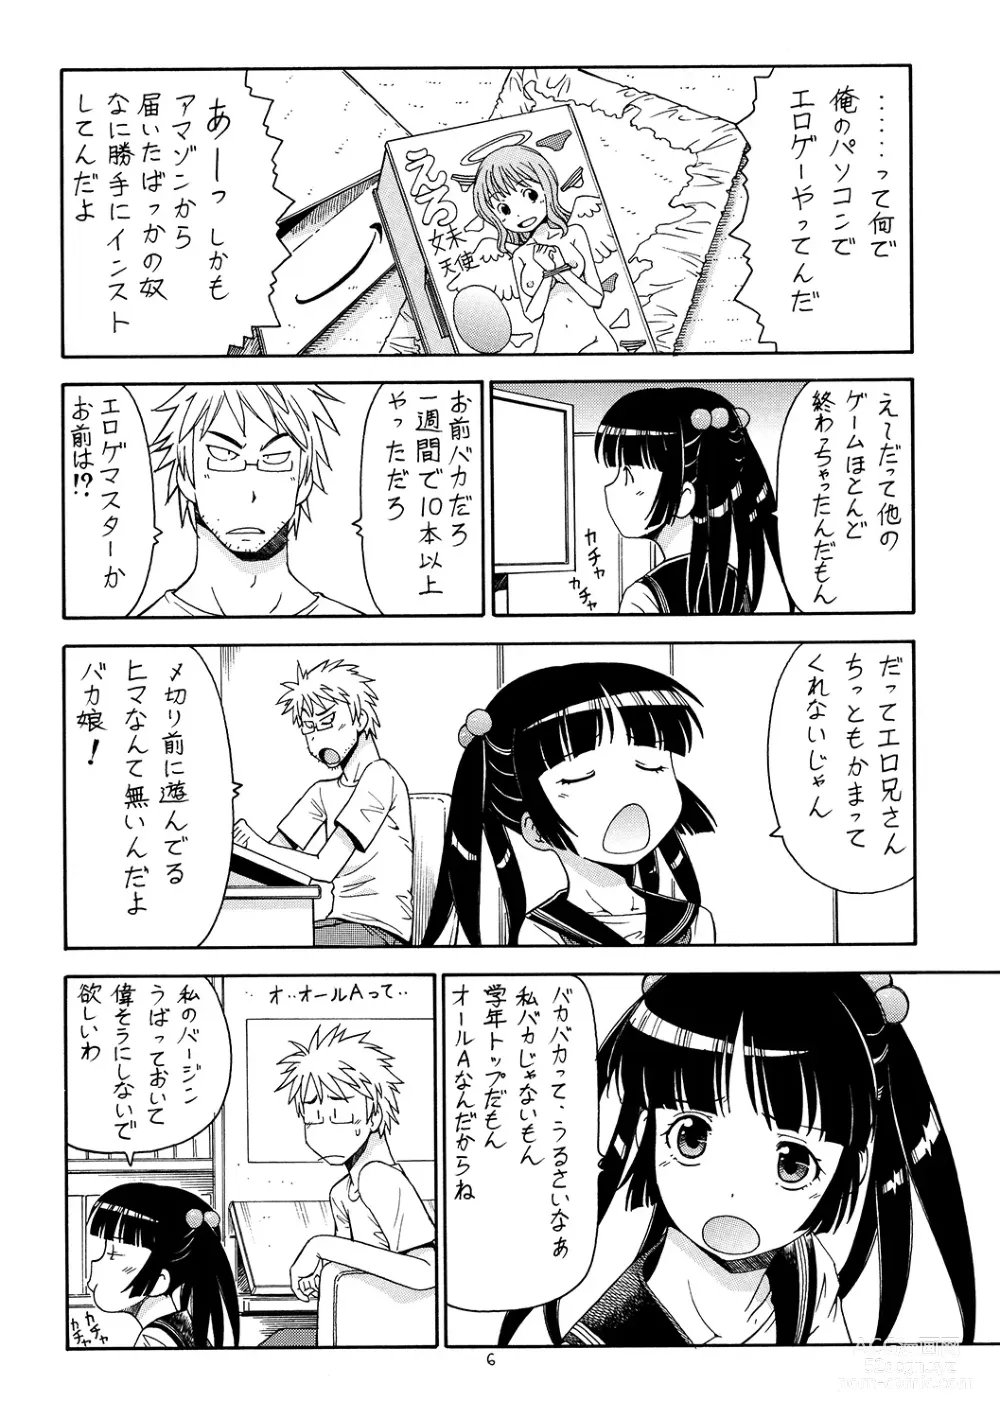 Page 7 of doujinshi Ita Yome Monogatari 2